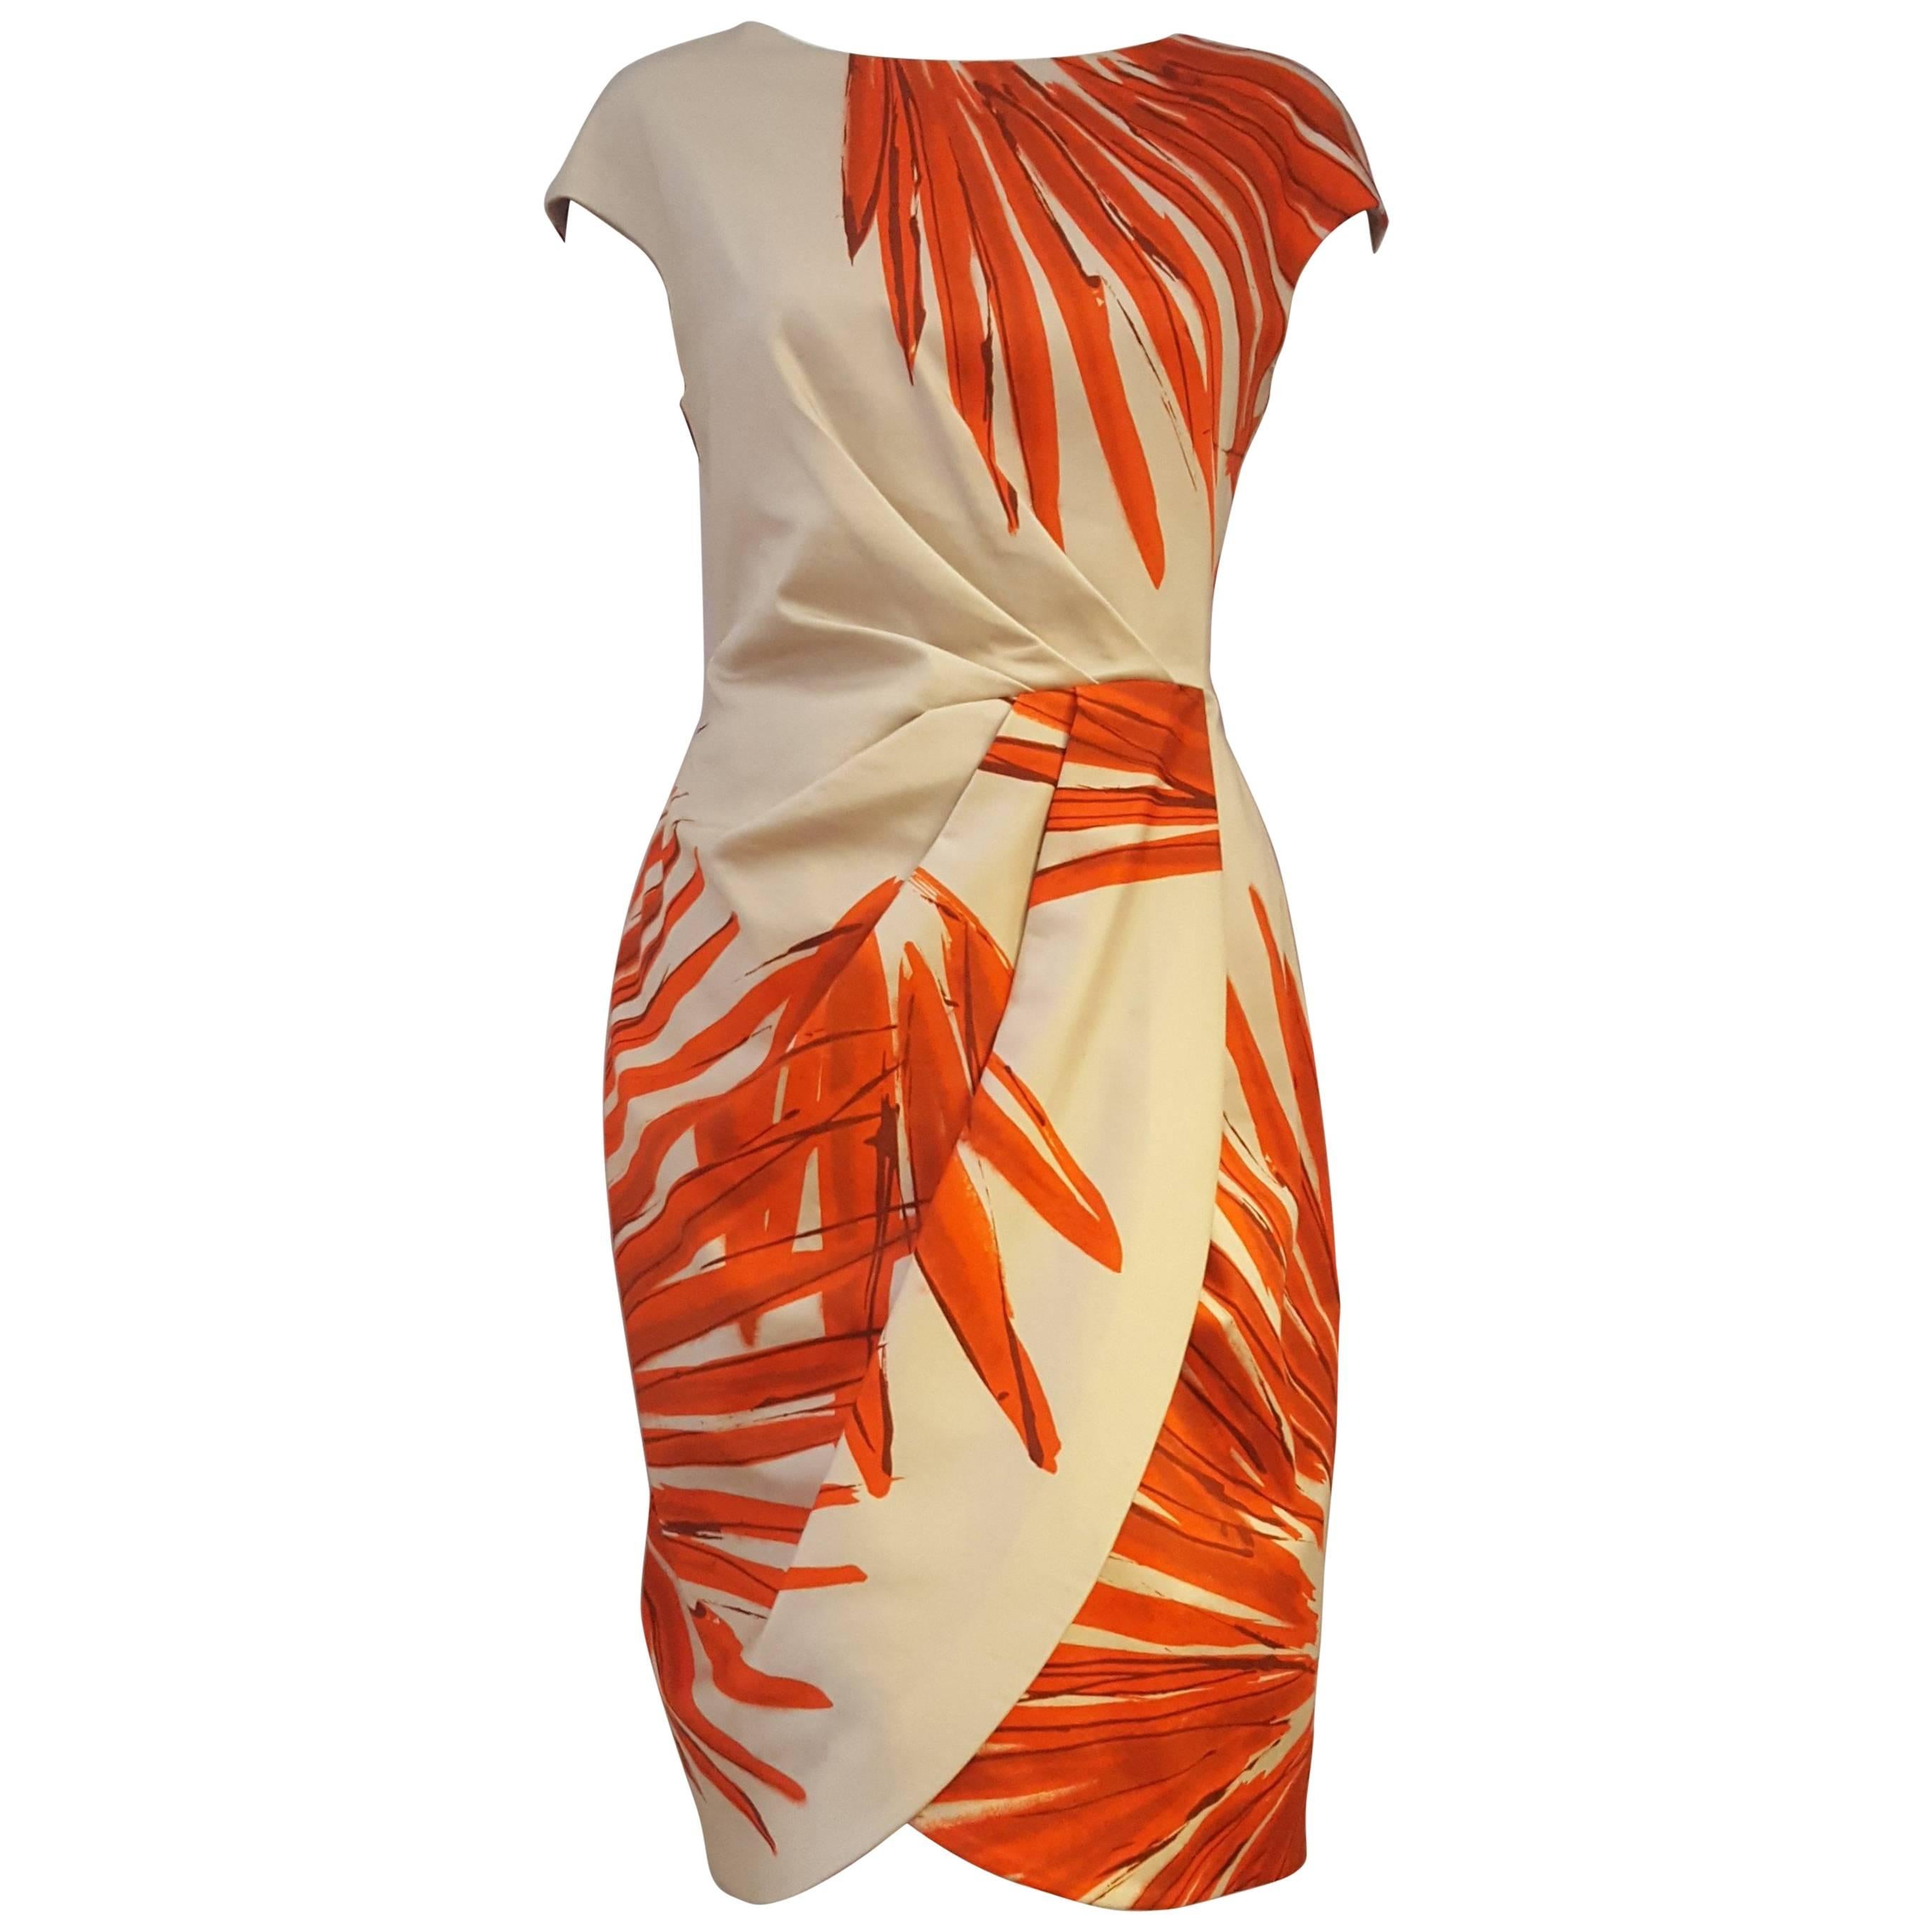 Luscious Lela Rose Orange & Beige Gathered Waist Sleeveless Dress For Sale